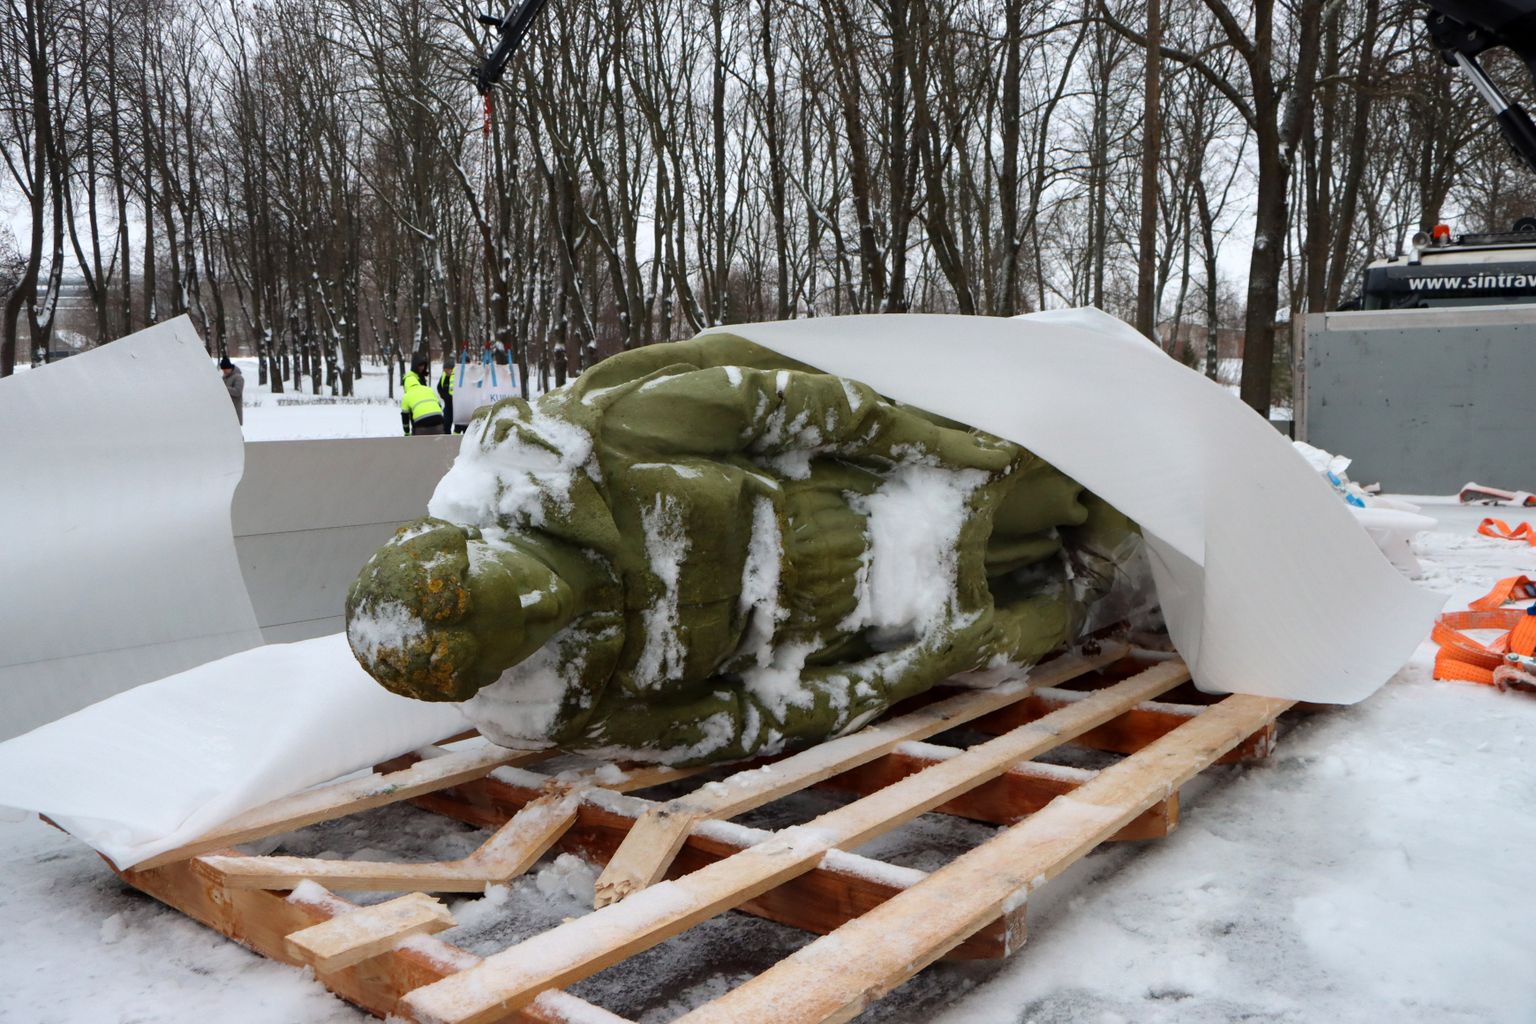 В этом году исполнилось бы 75 лет с момента установки этой статуи скорбящей женщины на улице Пионеэри в Кохтла-Ярве. Отныне она будет находиться в Эстонском военном музее.